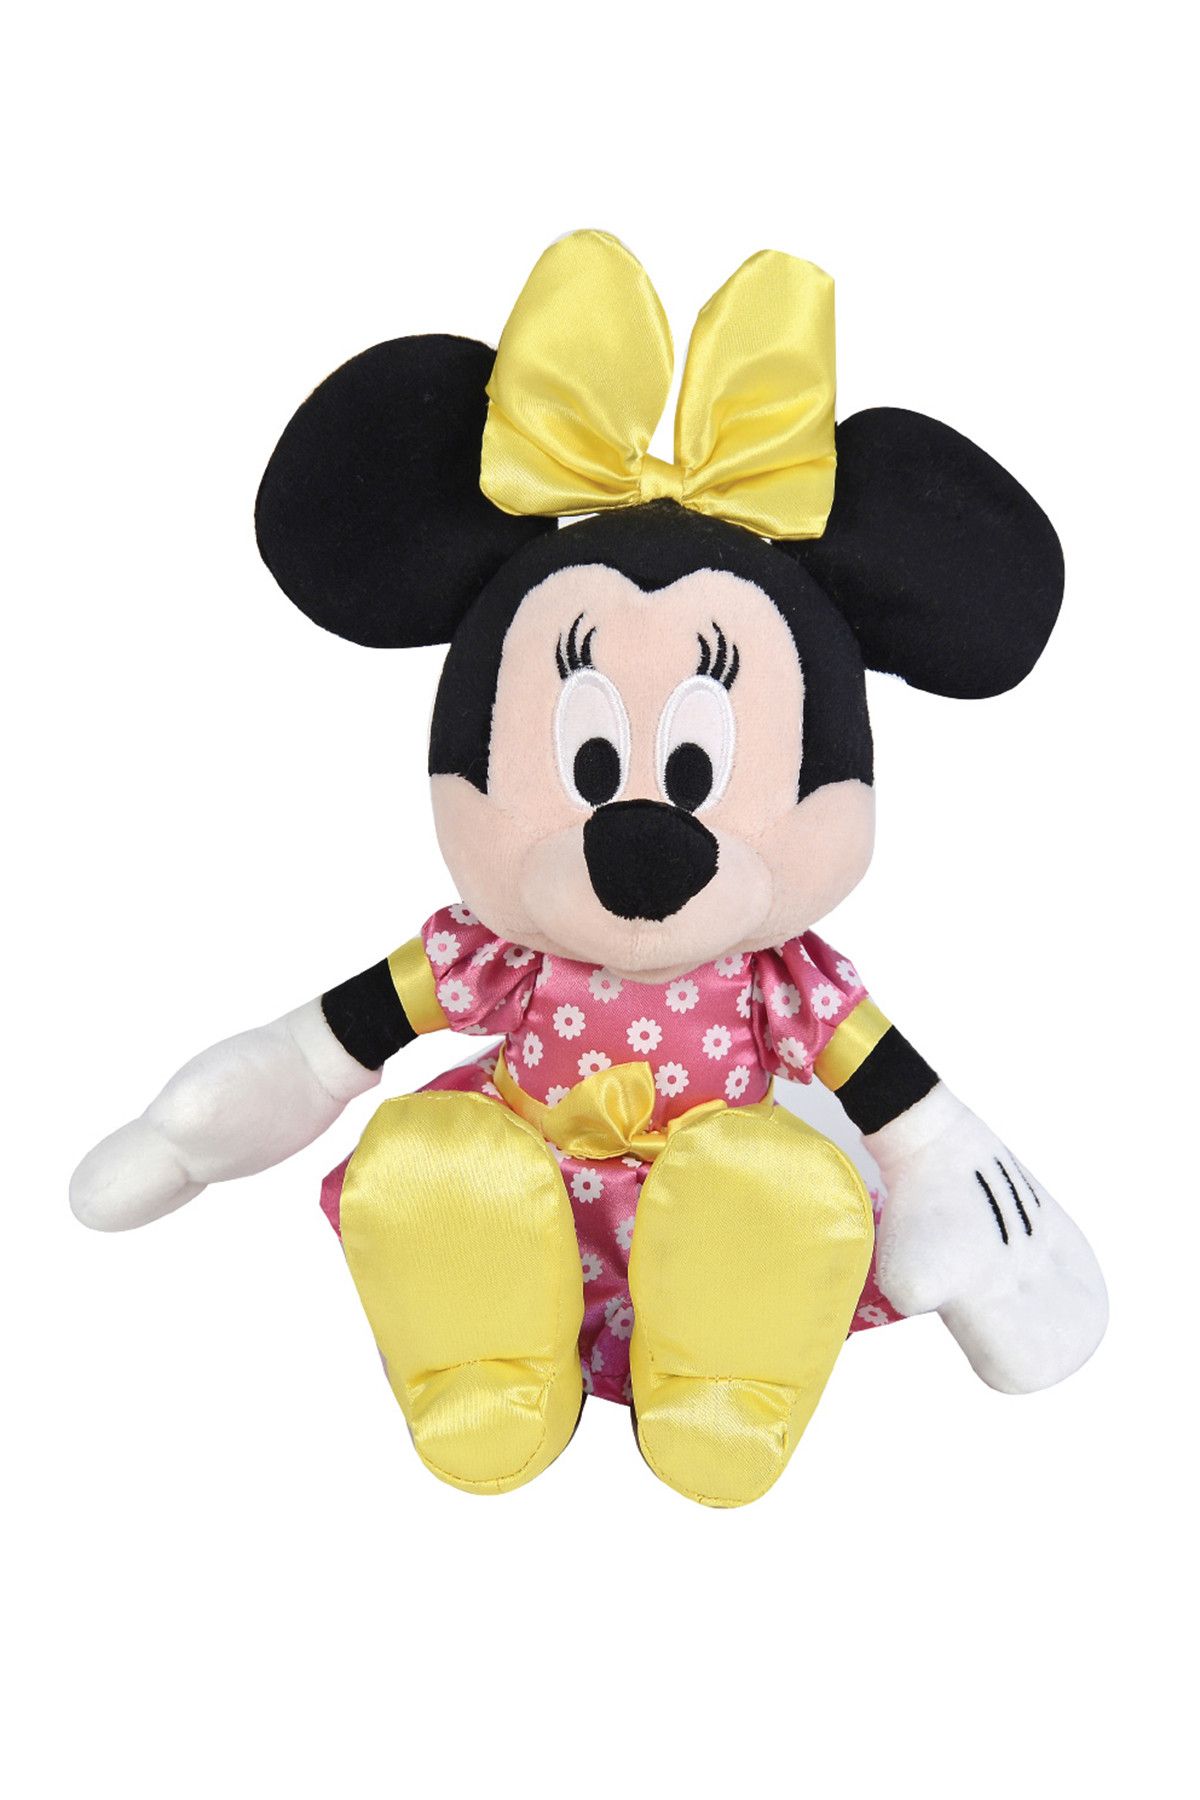 DİSNEY Minnie Mouse Butik Çuha Çiçeği Peluş Oyuncak 25 Cm /